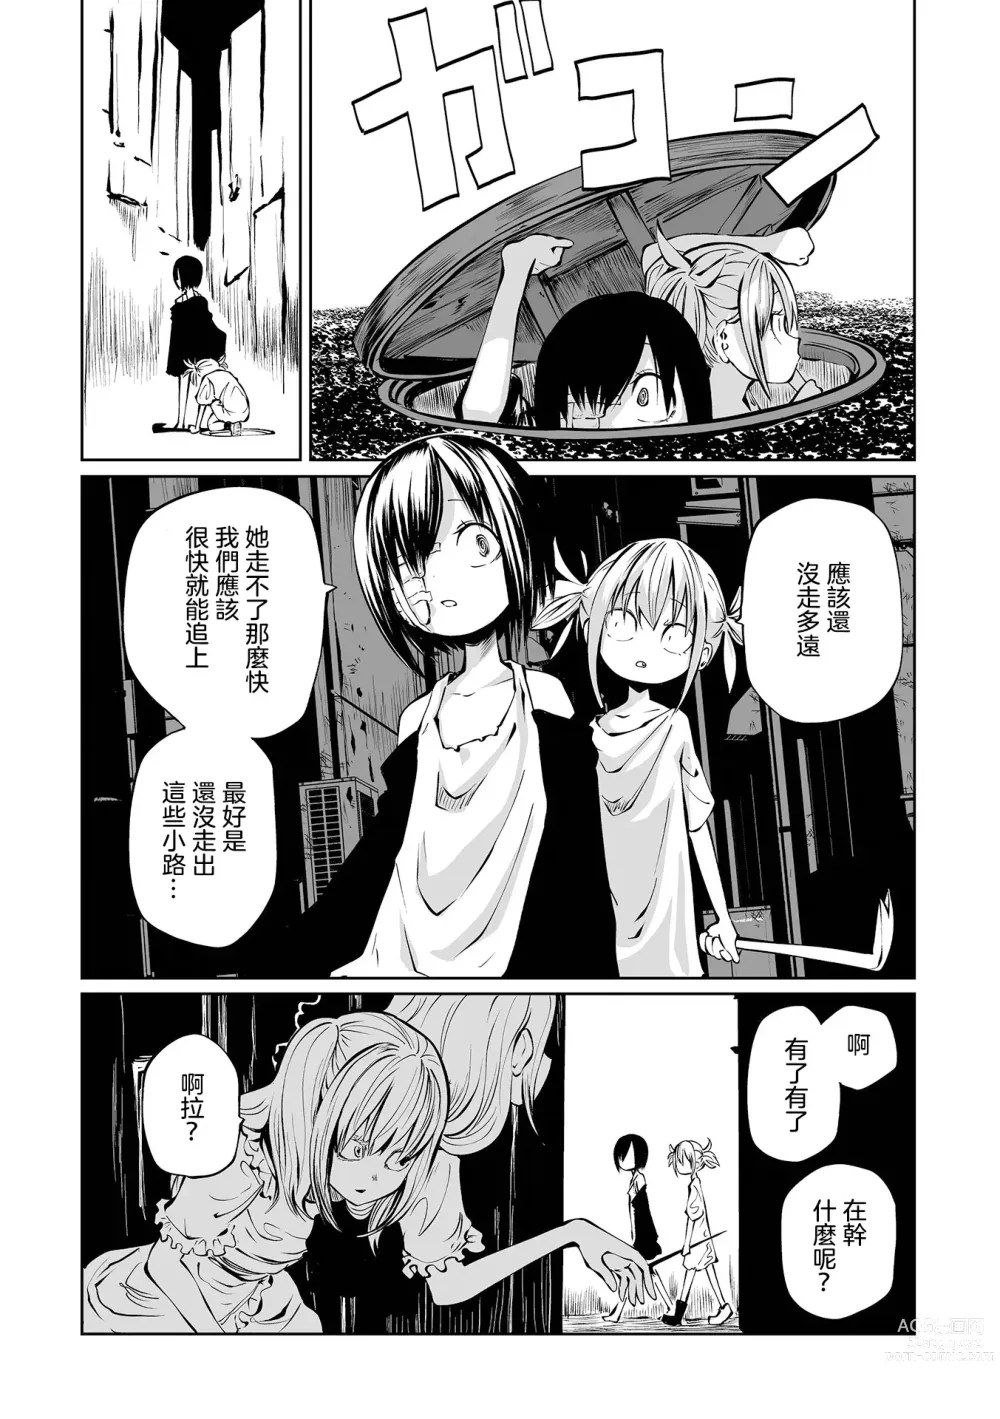 Page 46 of manga 地下生活